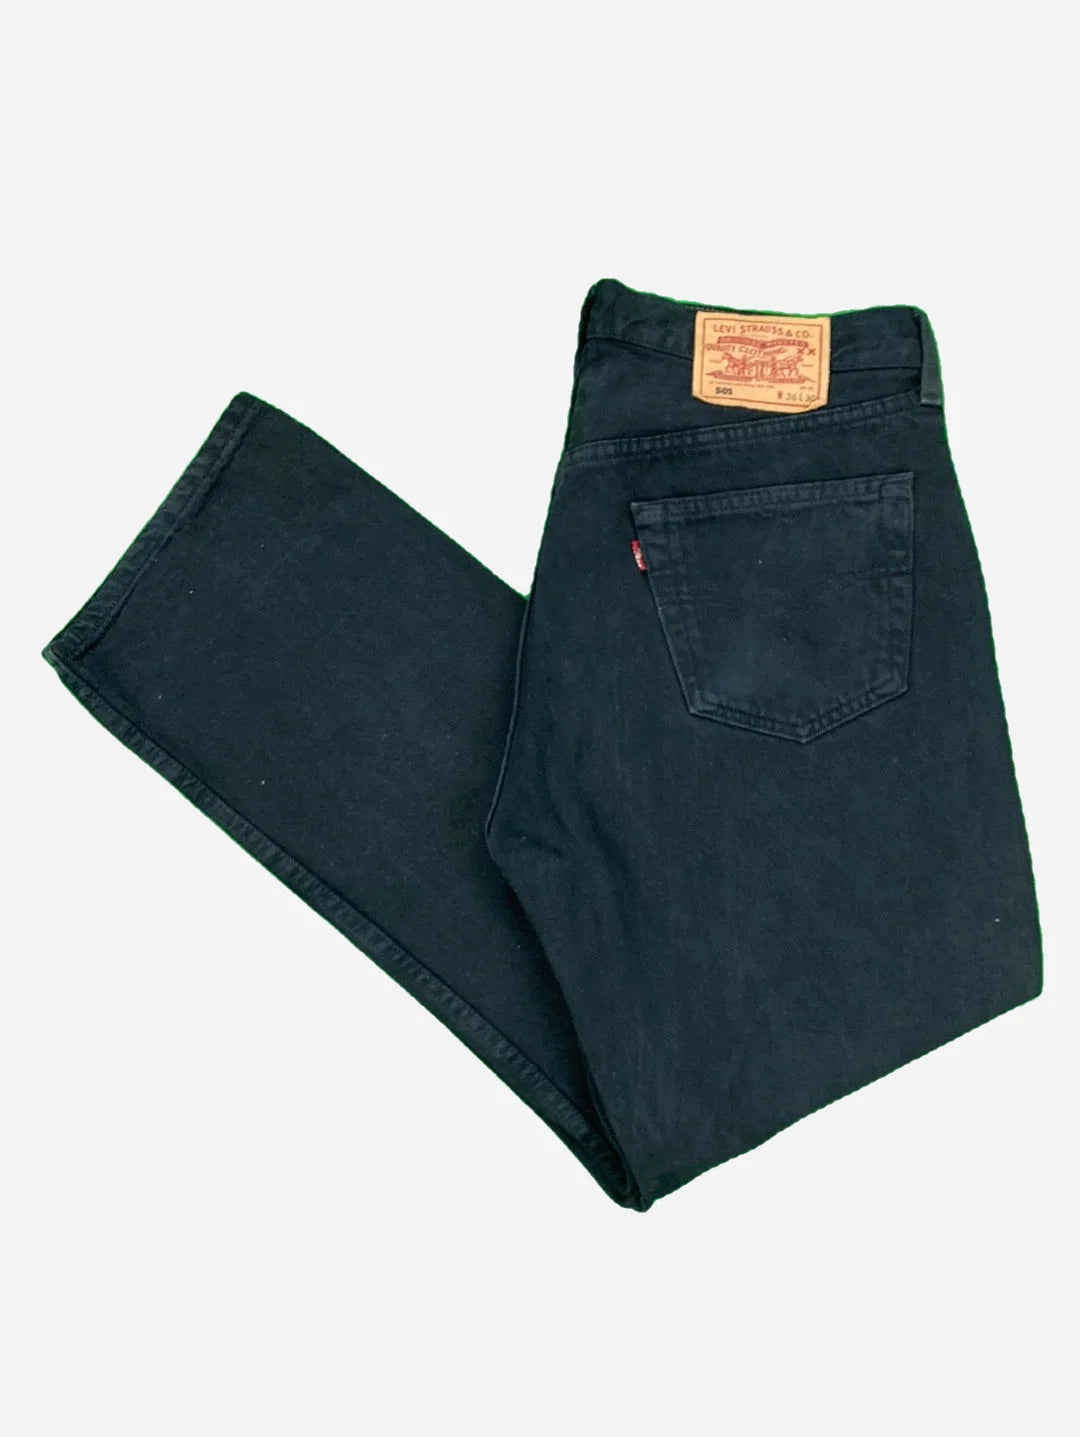 Levi’s 501 Jeans 34/30 (L)